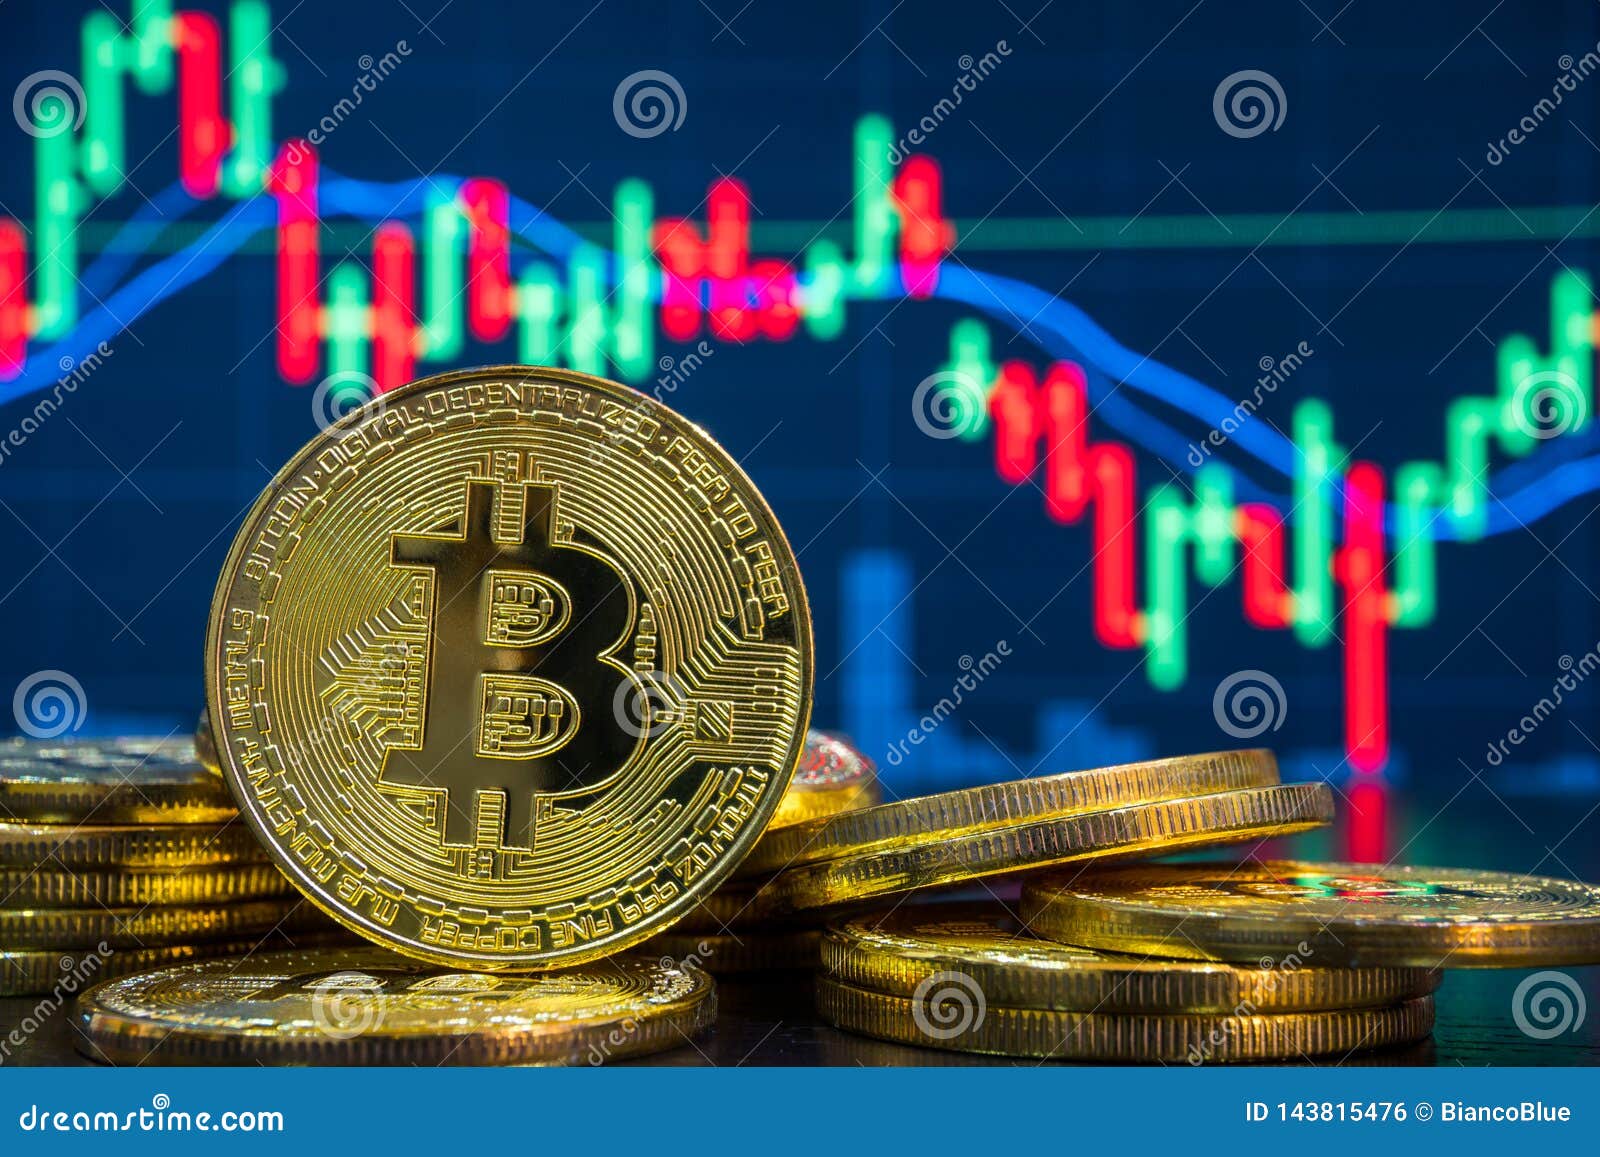 bitcoin trading market market